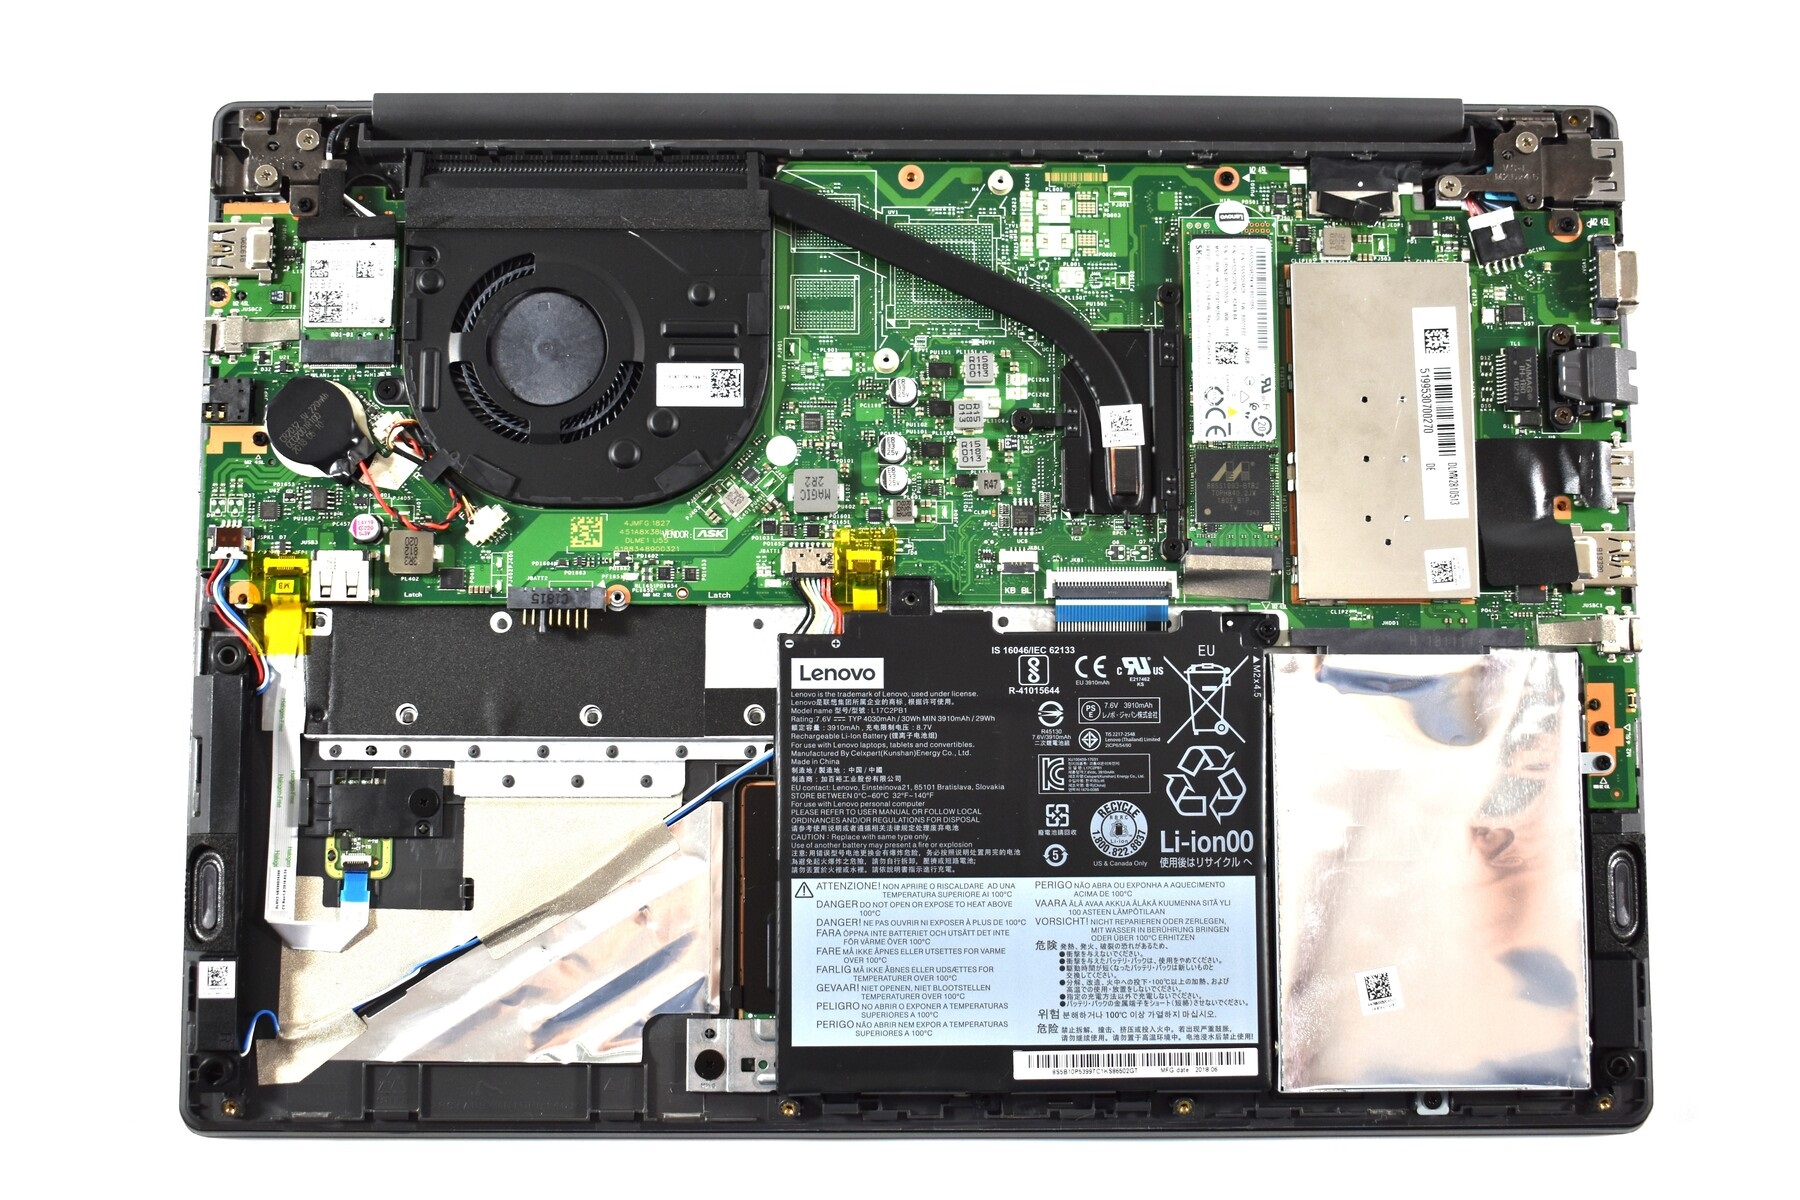 Đánh giá Lenovo V330-14IKB (i5, FullHD): Laptop doanh nhân giá rẻ, Chuyên trang tư vấn Laptop